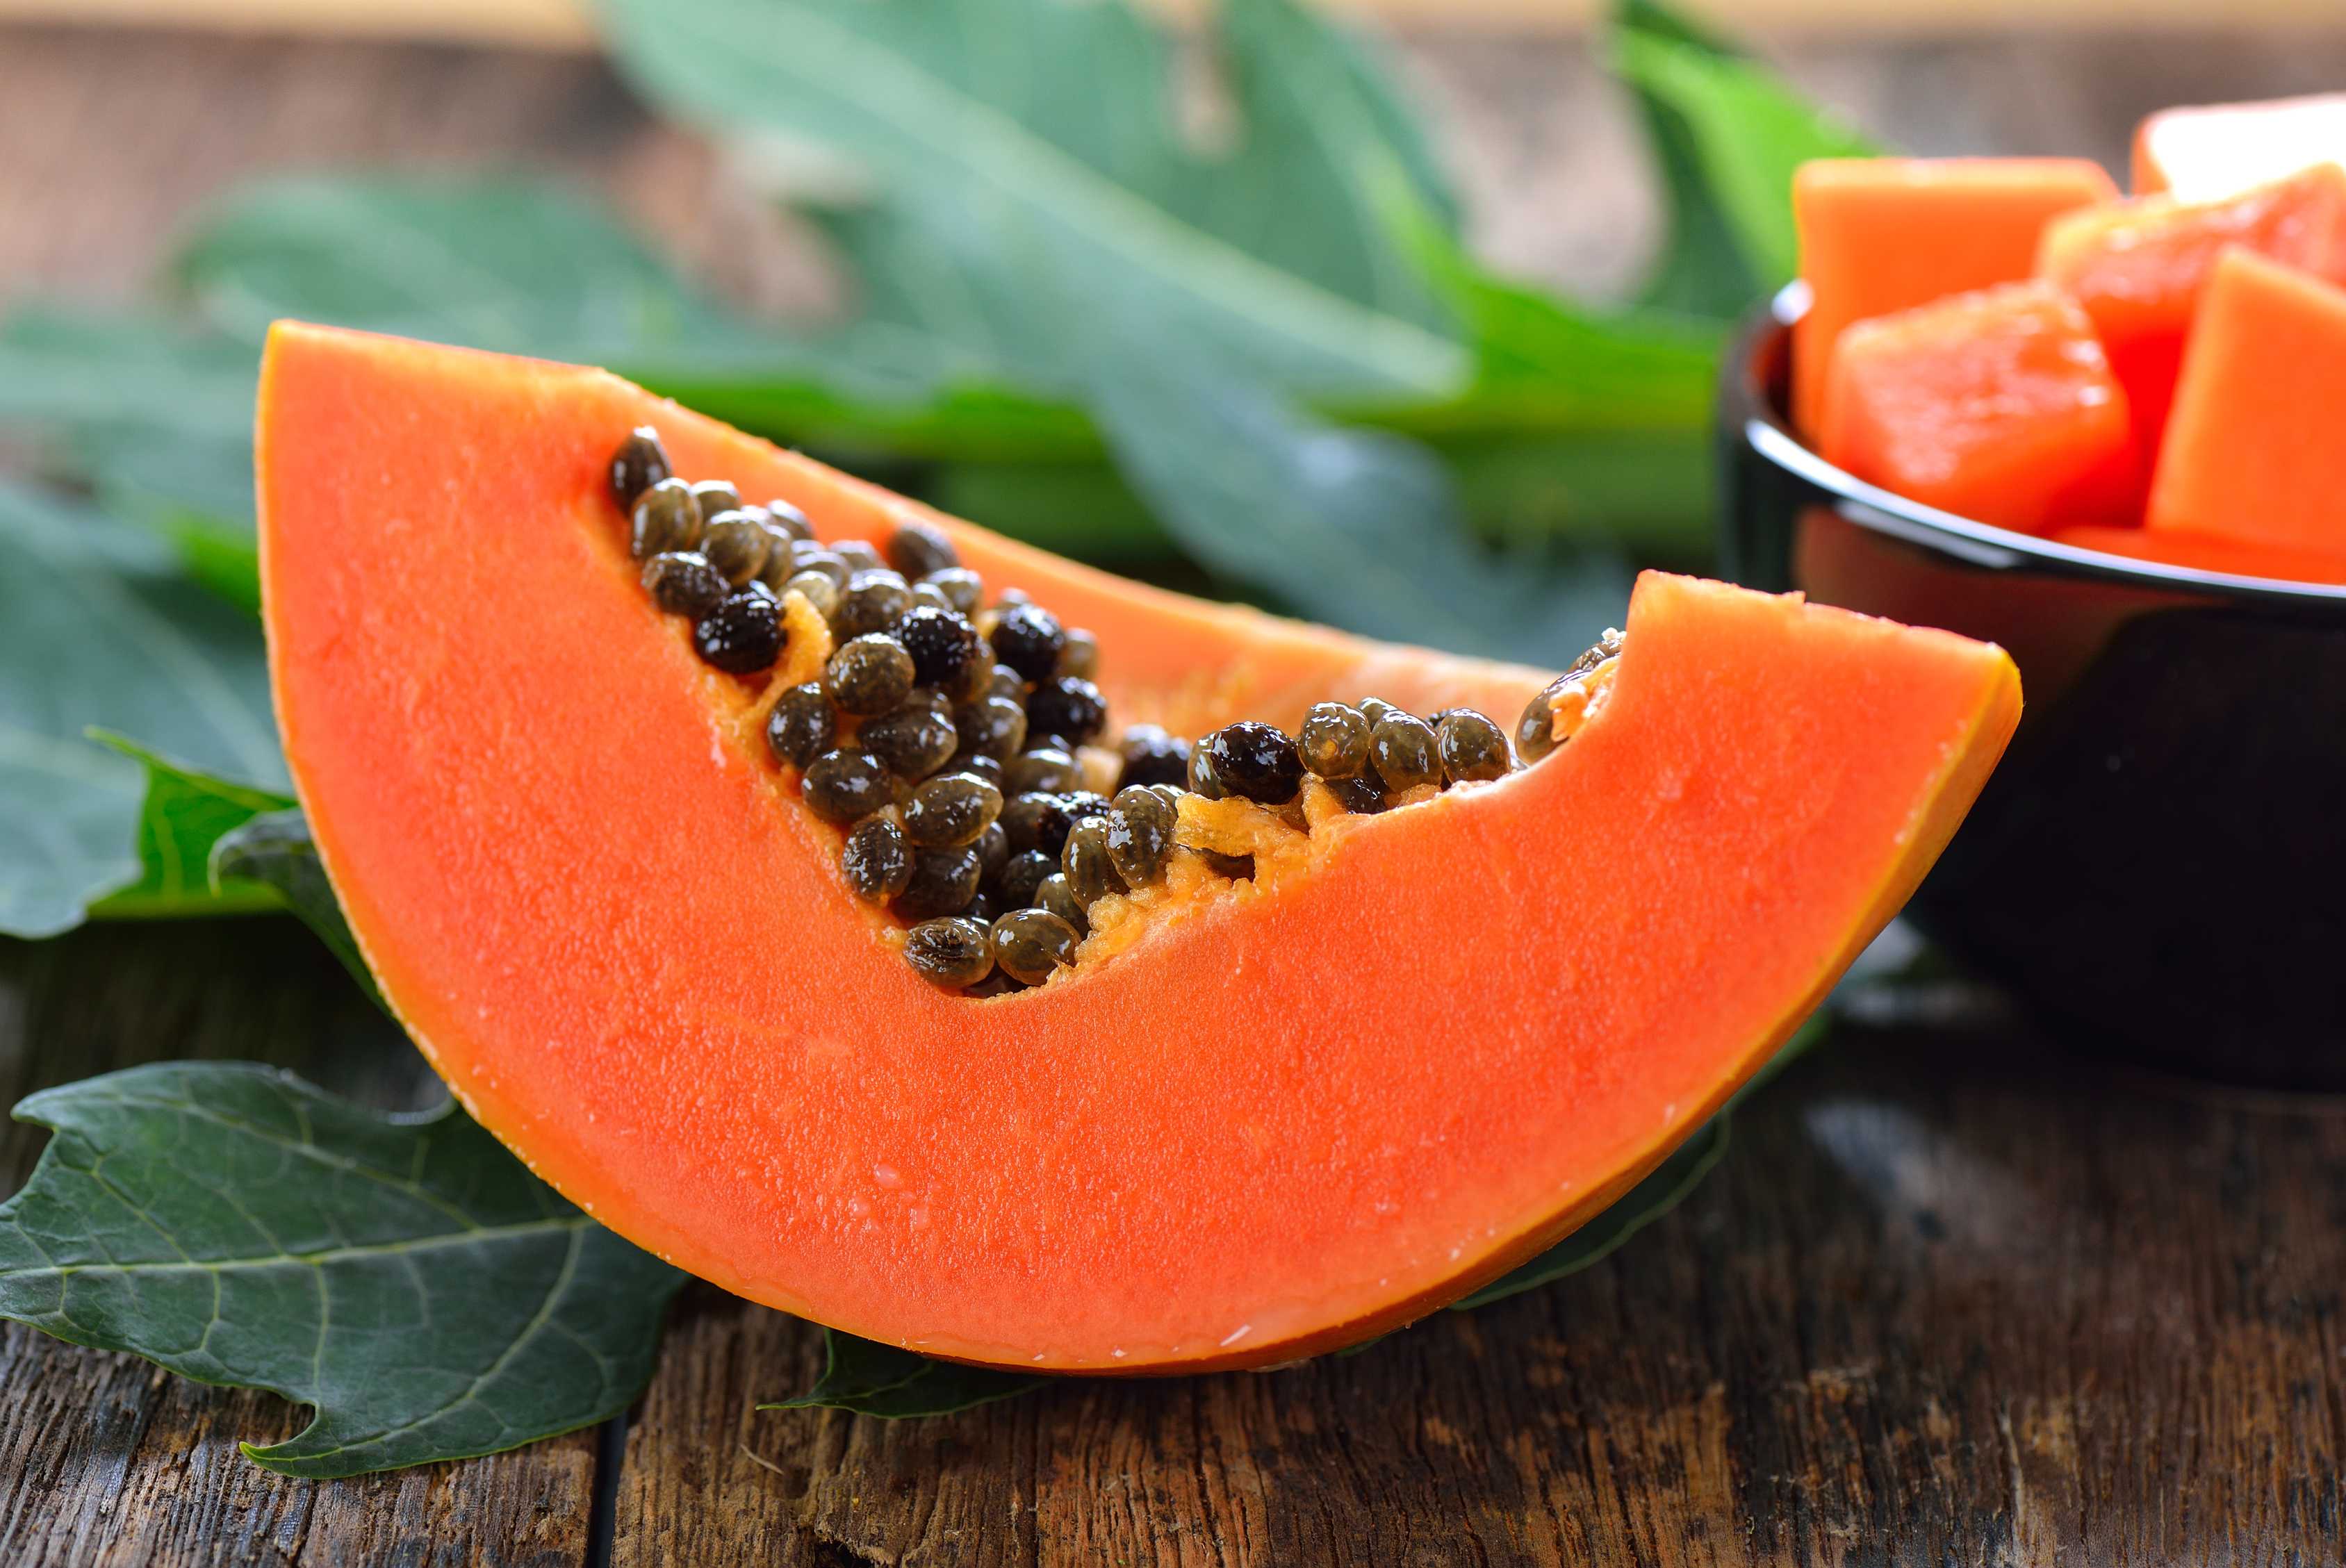 microsoft, papaya: opiniones de profesionales en nutrición, porciones saludables y desventajas